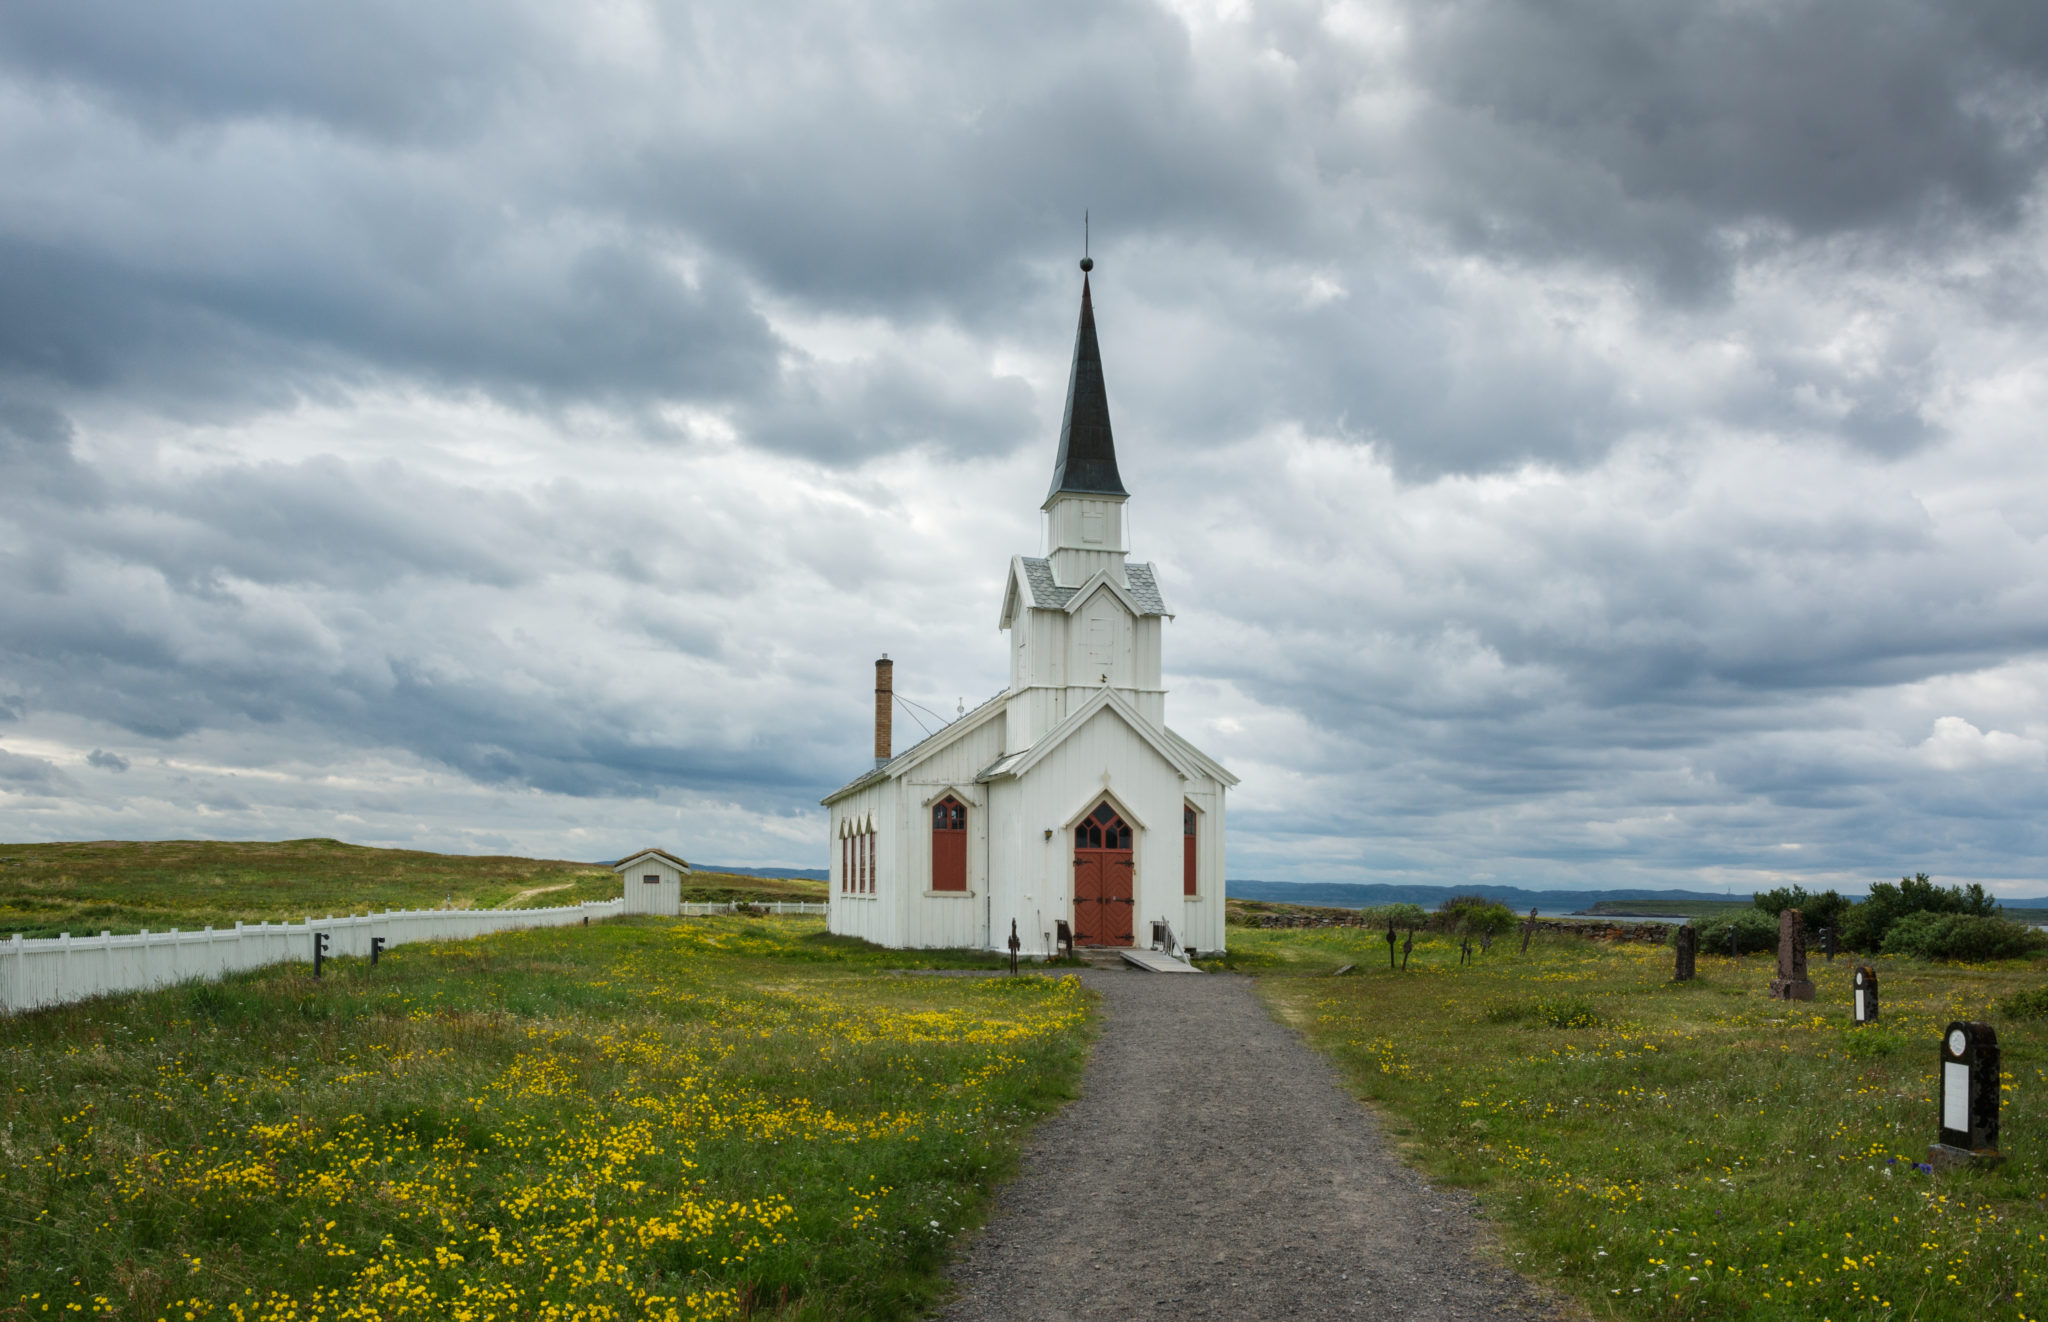 Nesseby kirke, et landemerke i det åpne landskapet ved Nasjonal turistveg Varanger.

©Foto: Harald Bech-Hanssen / Statens vegvesen